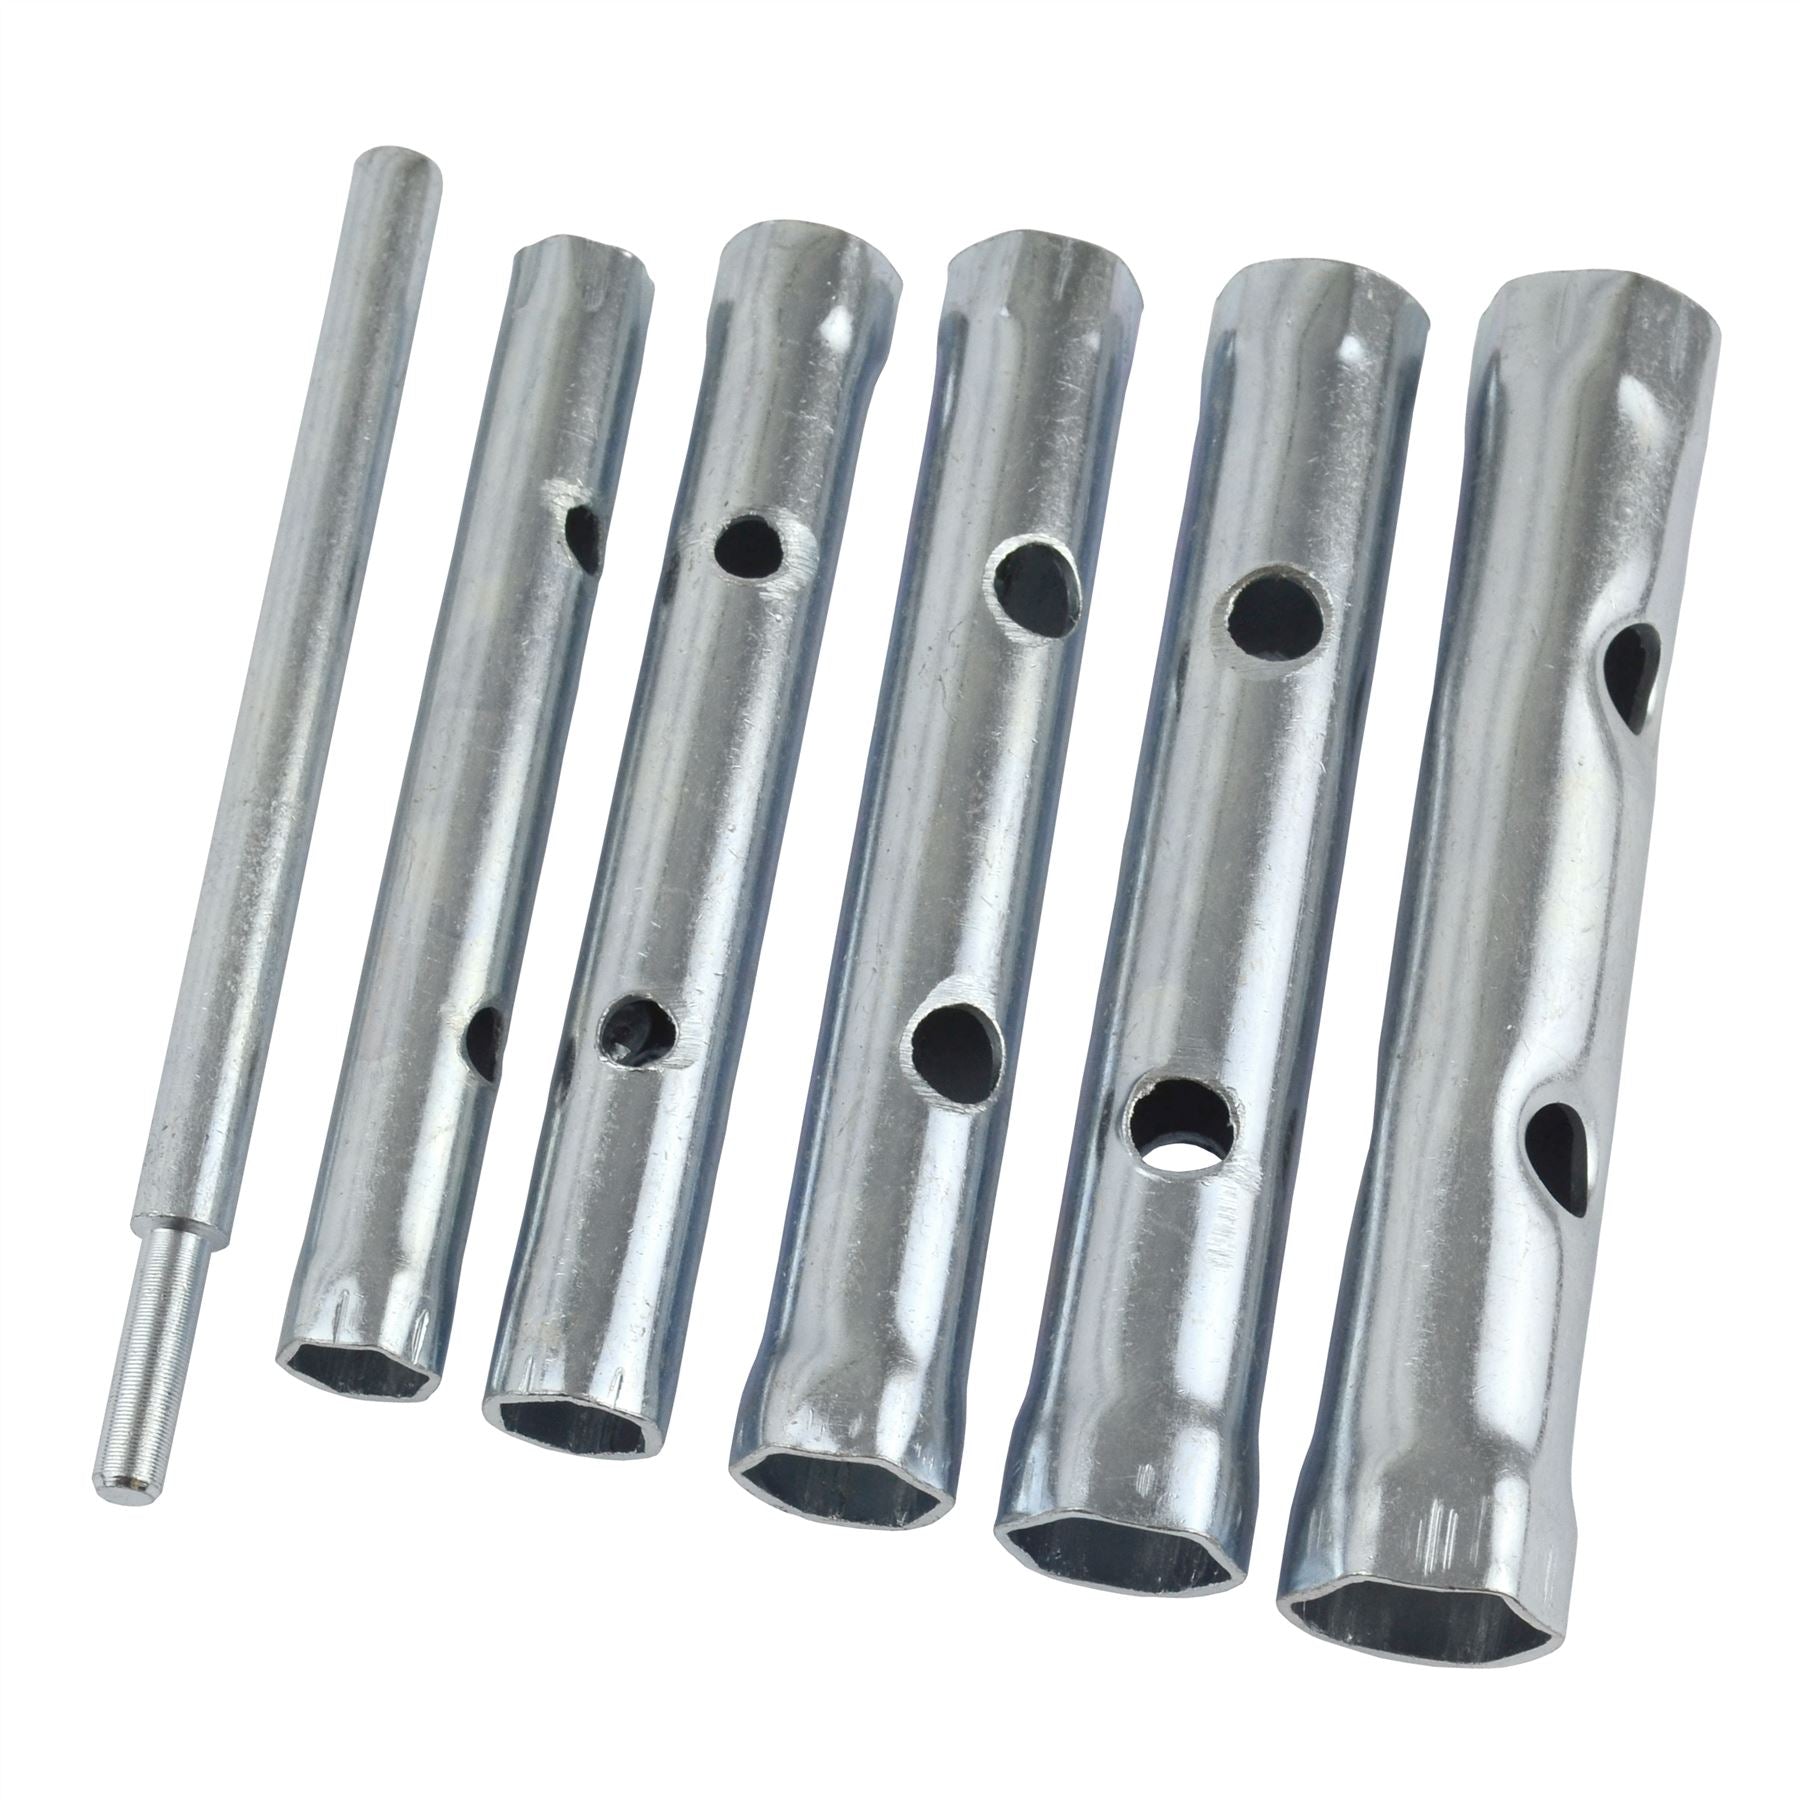 6pc Box Tubular Spanner Set 10-19mm Wrench Tool Garage Workshop Plumber TE662